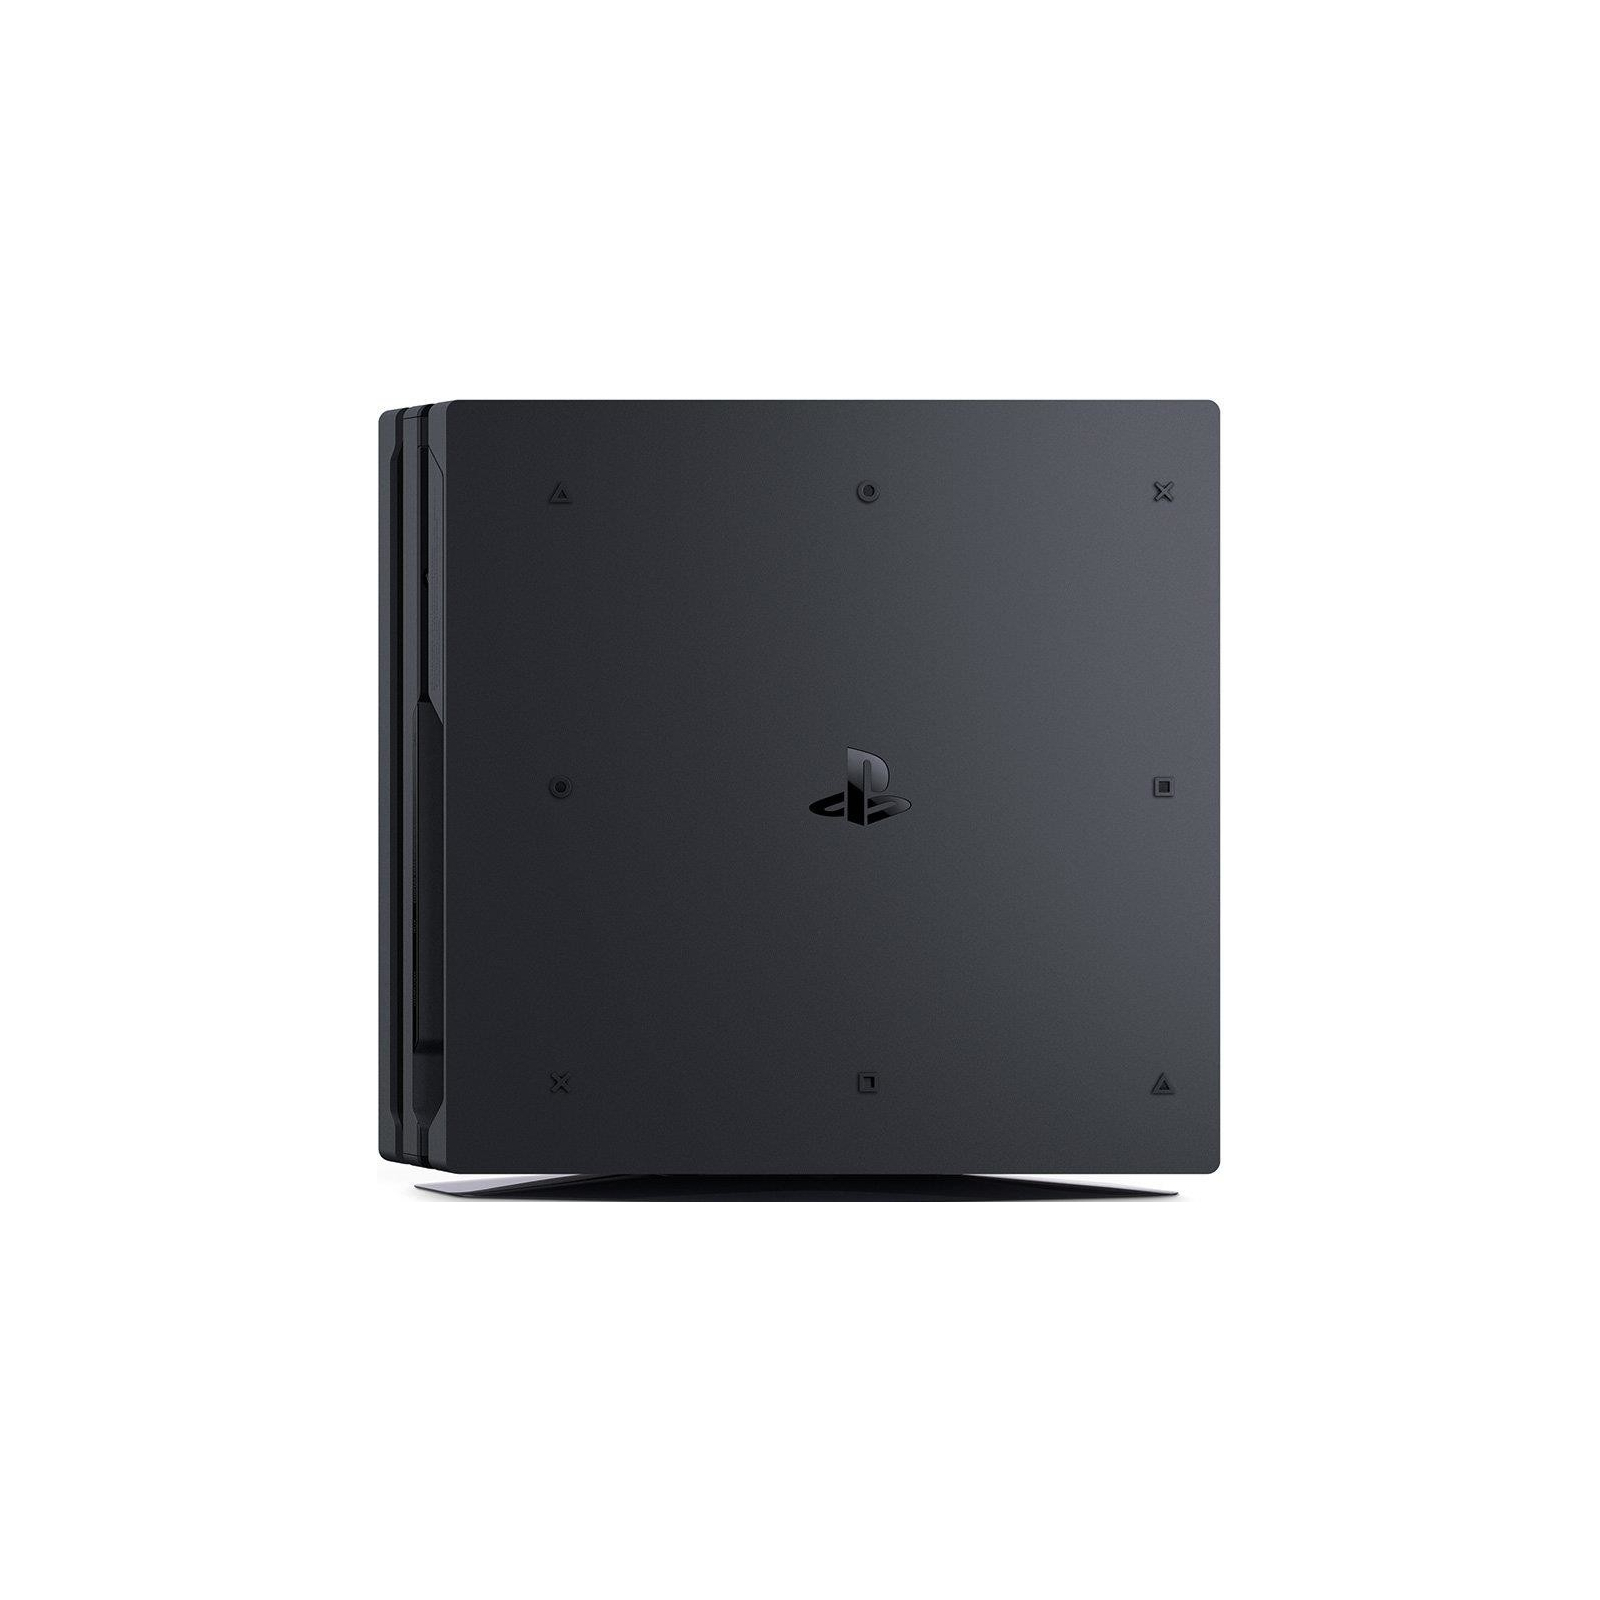 Игровая консоль Sony PlayStation 4 Pro 1TB black (CUH-7108B) изображение 4